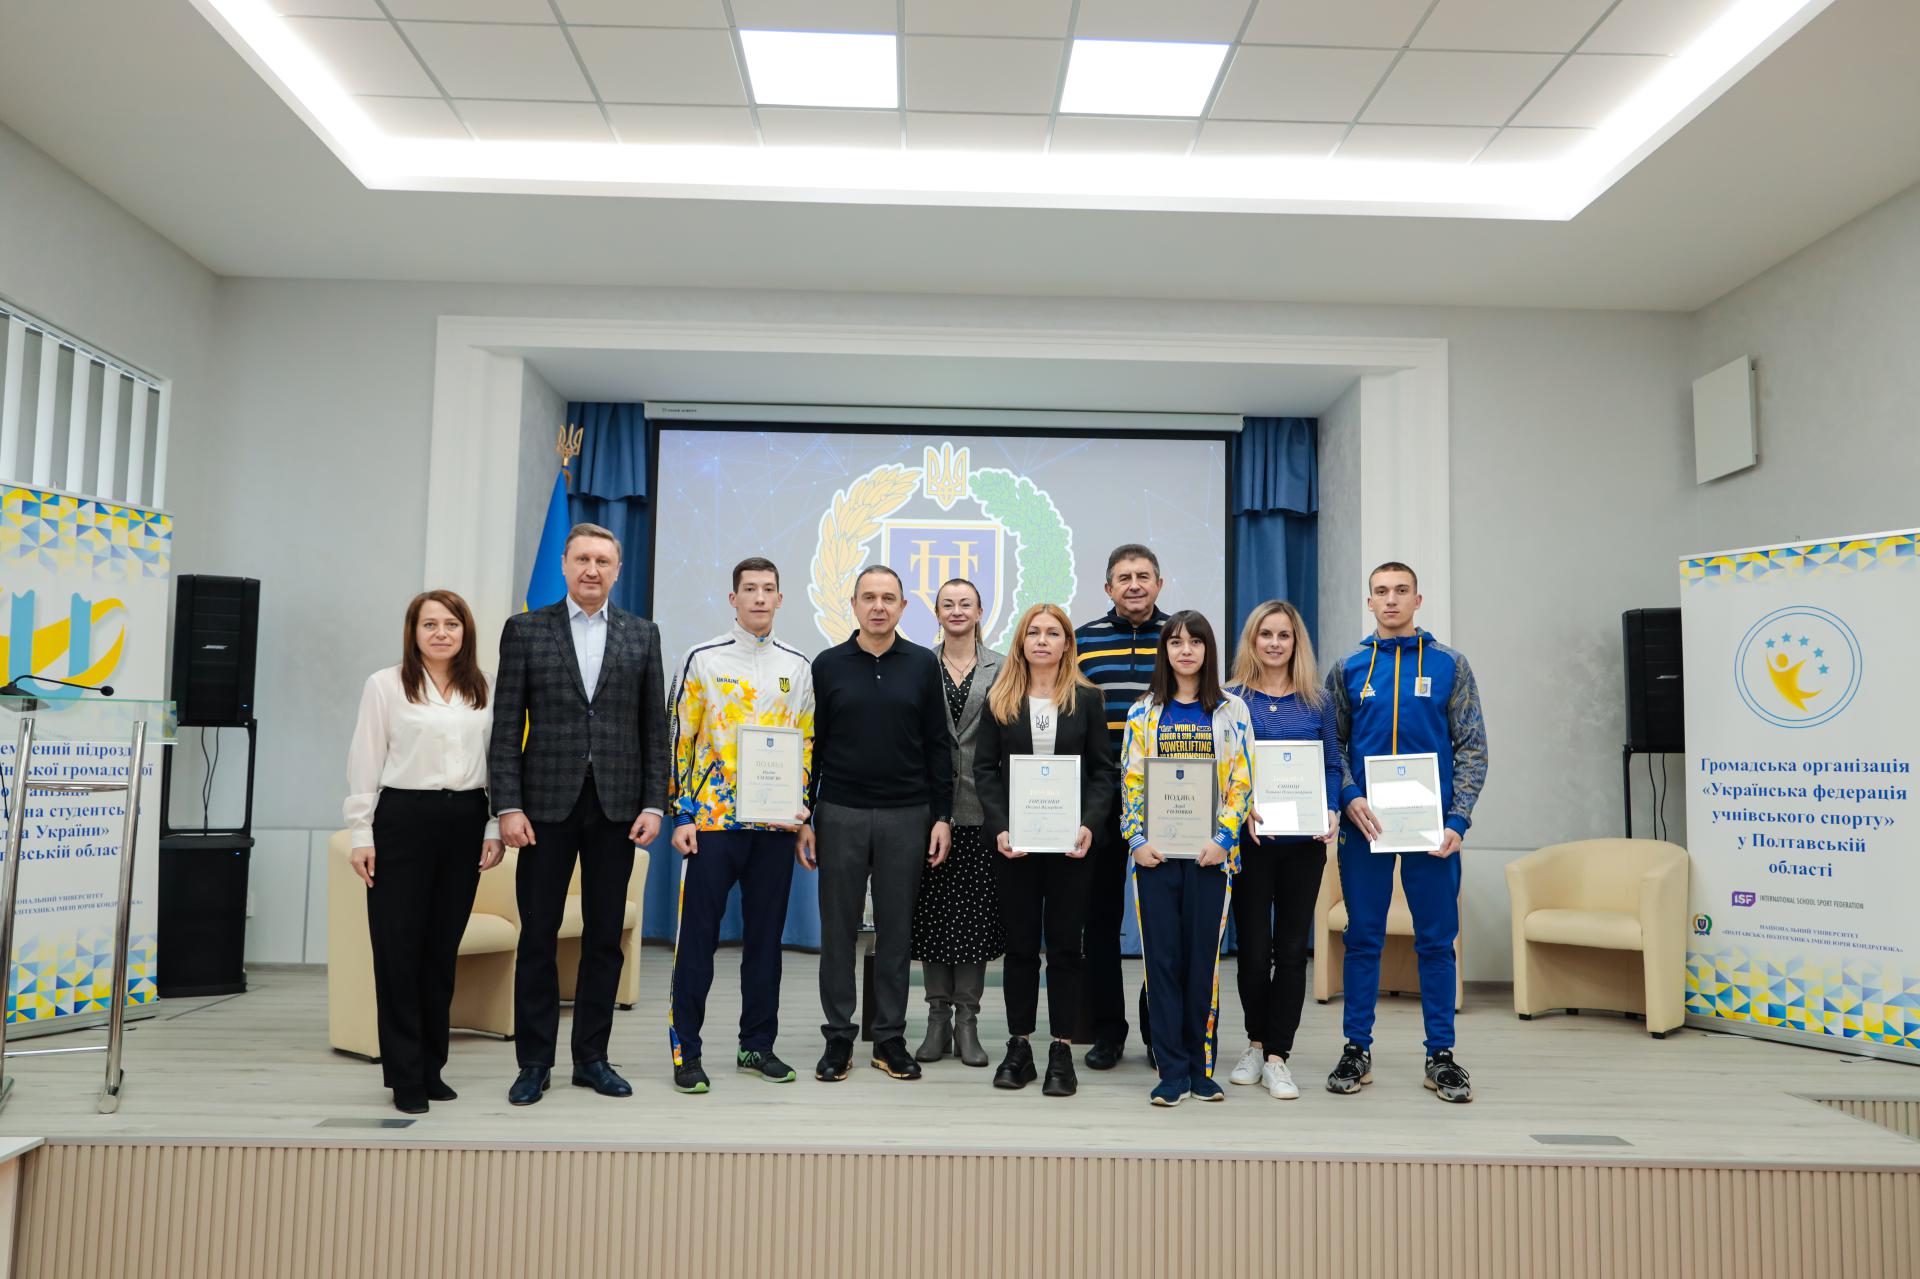 Президент НОК України Вадим Гутцайт відвідав університет і нагородив спортсменів політехніки